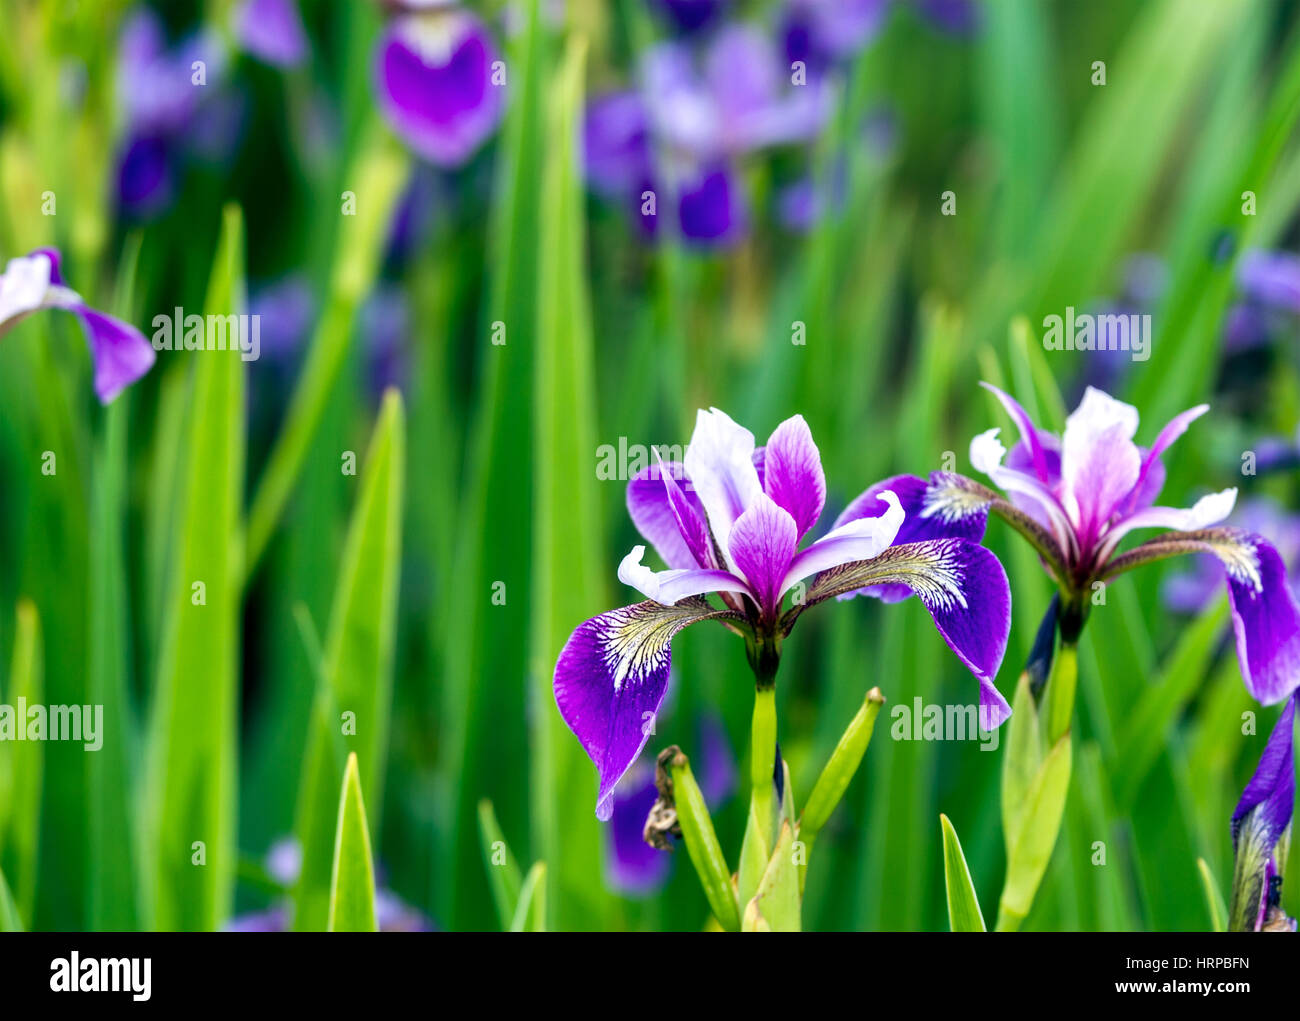 La primavera. Siberiano púrpura (Iris sibirica) que florece en el jardín. Foto de stock